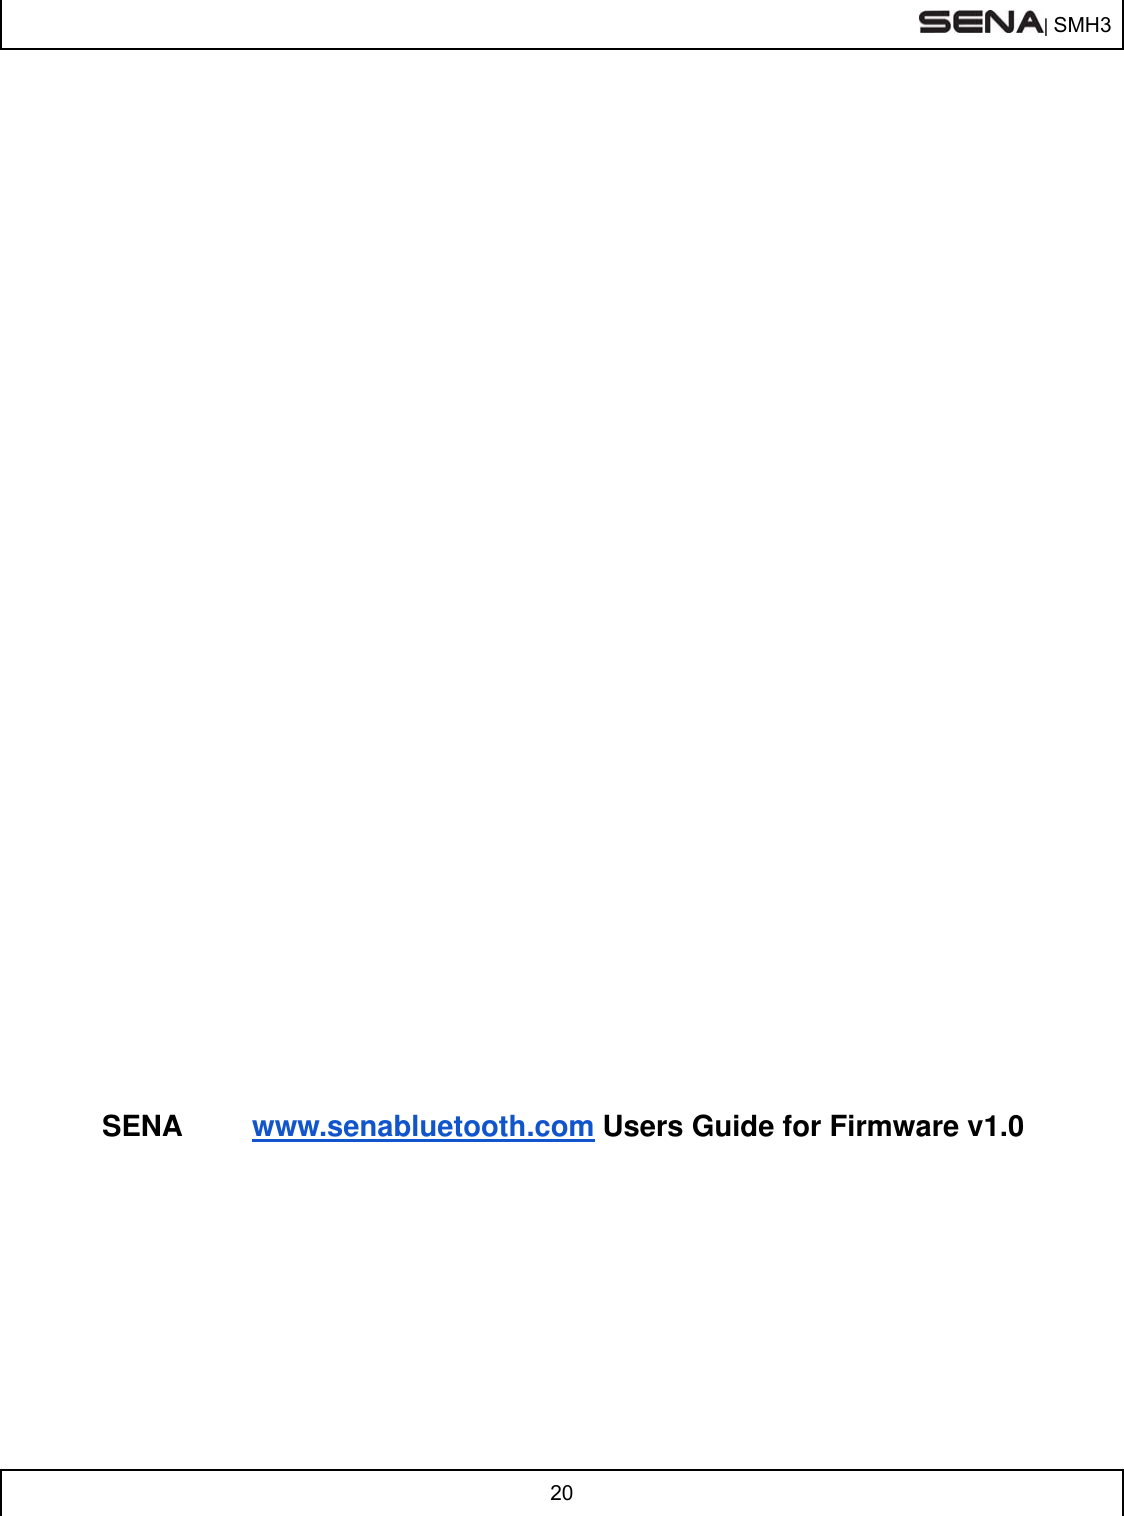  | SMH3  20                              SENA www.senabluetooth.com Users Guide for Firmware v1.0   